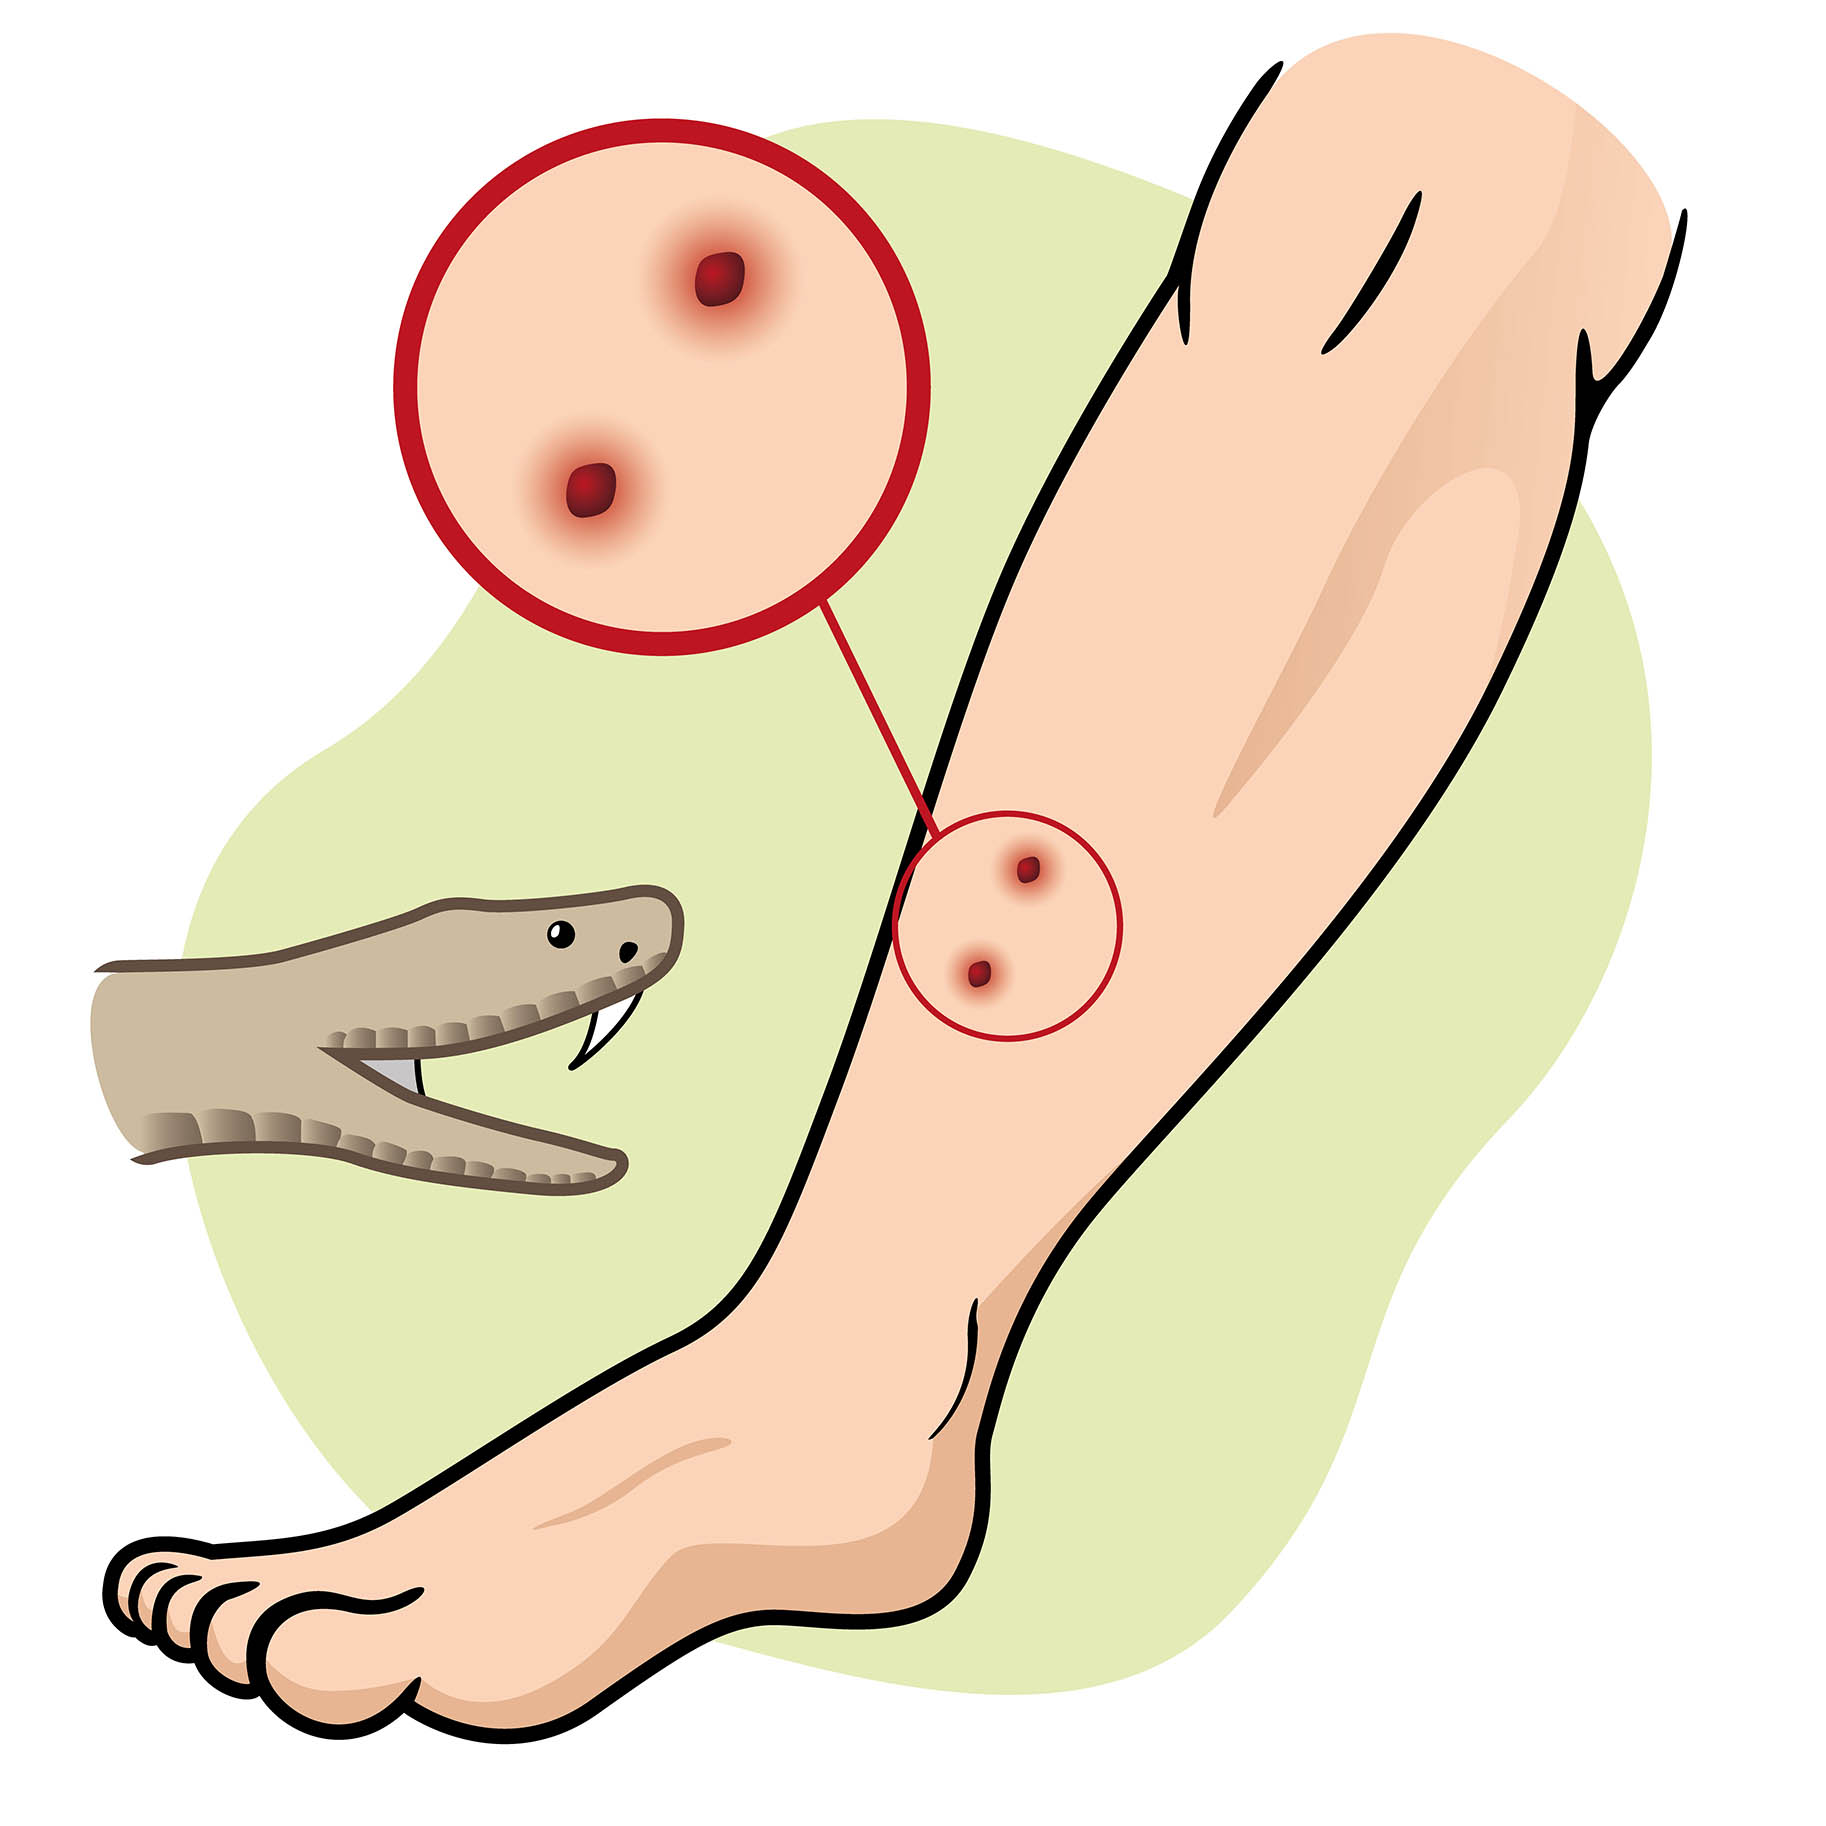 immagine che mostra le caratteristiche del morso della vipera su una gamba